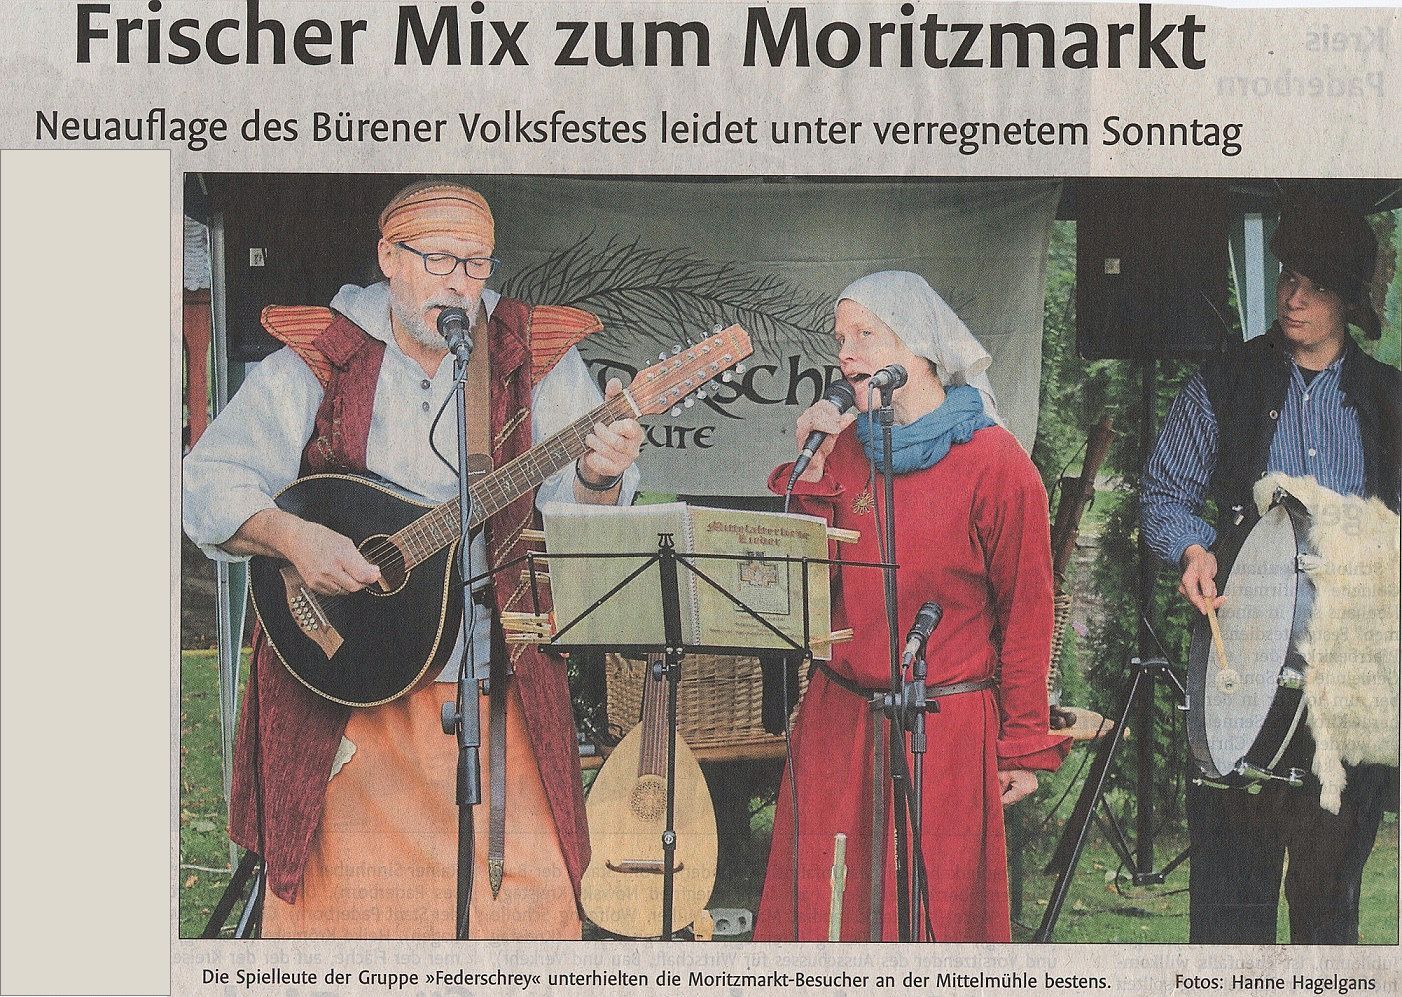 Moritzmarkt 2018